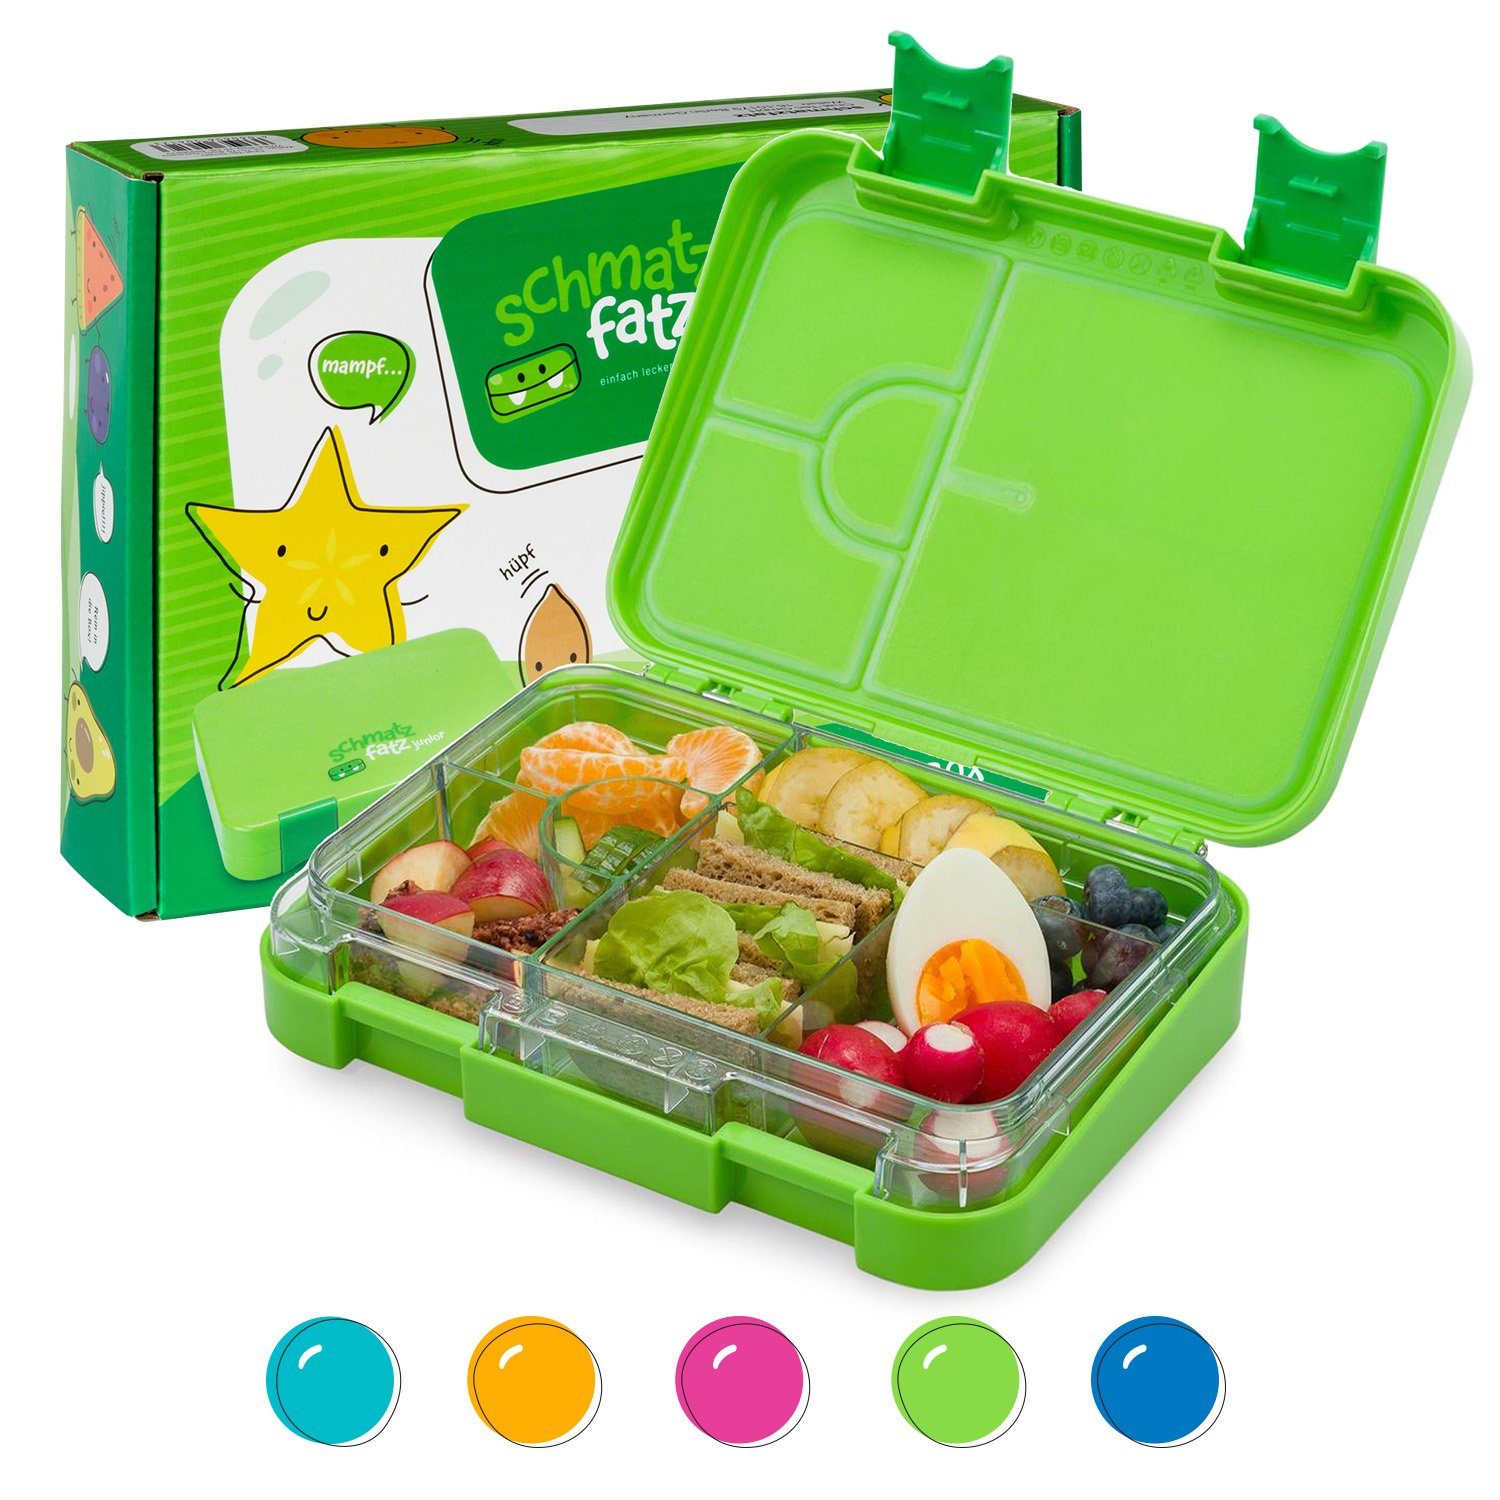 Klarstein Frischhaltedose schmatzfatz junior Lunchbox, Kunststoff Grün | Frischhaltedosen